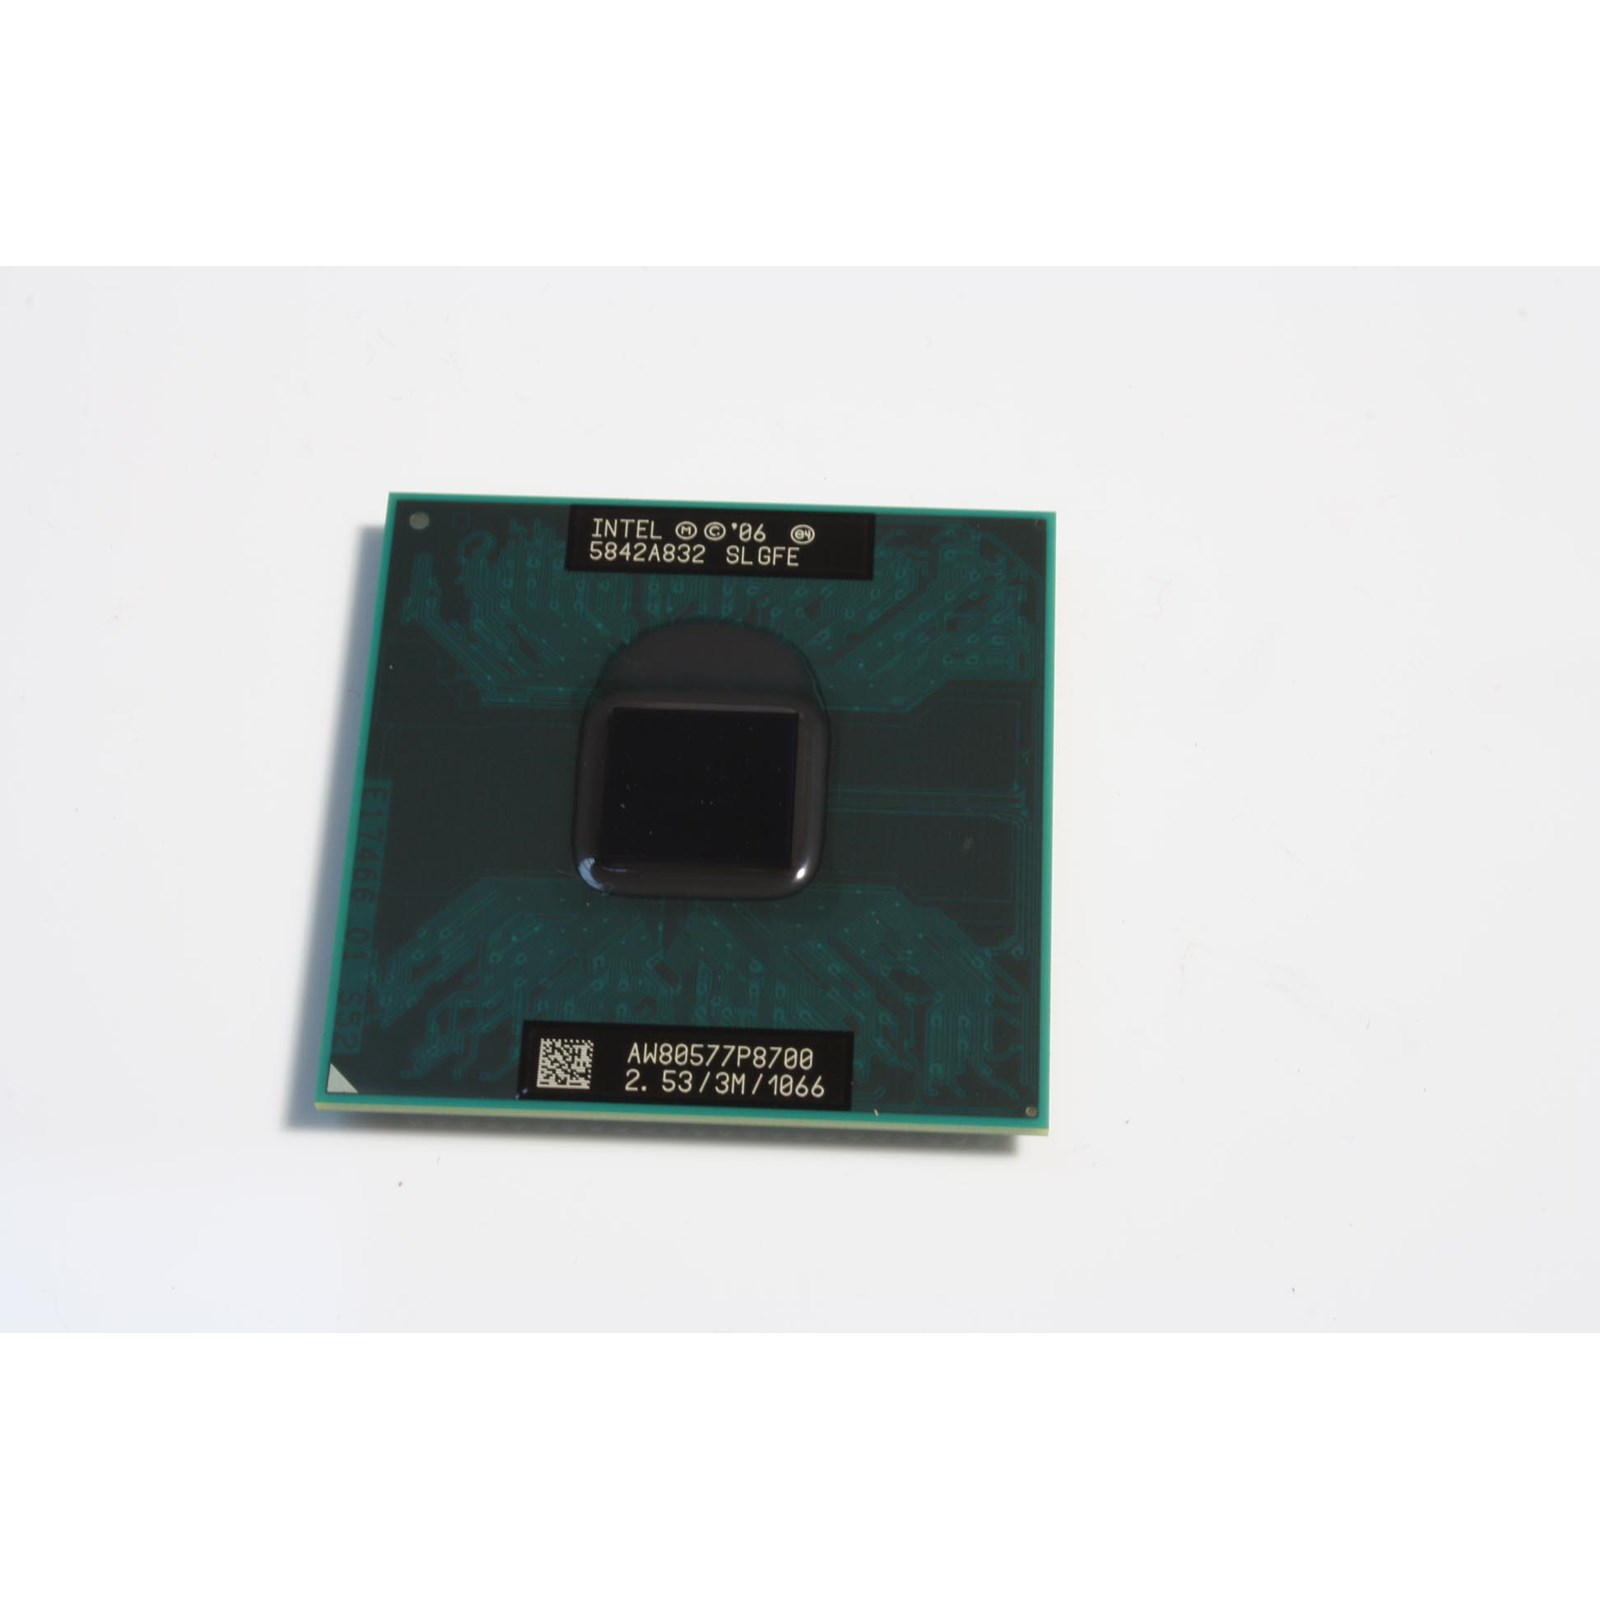 Intel Core 2 Duo Mobile (P8700) 2.53GHz Processor - BX80577P8700 | CCL